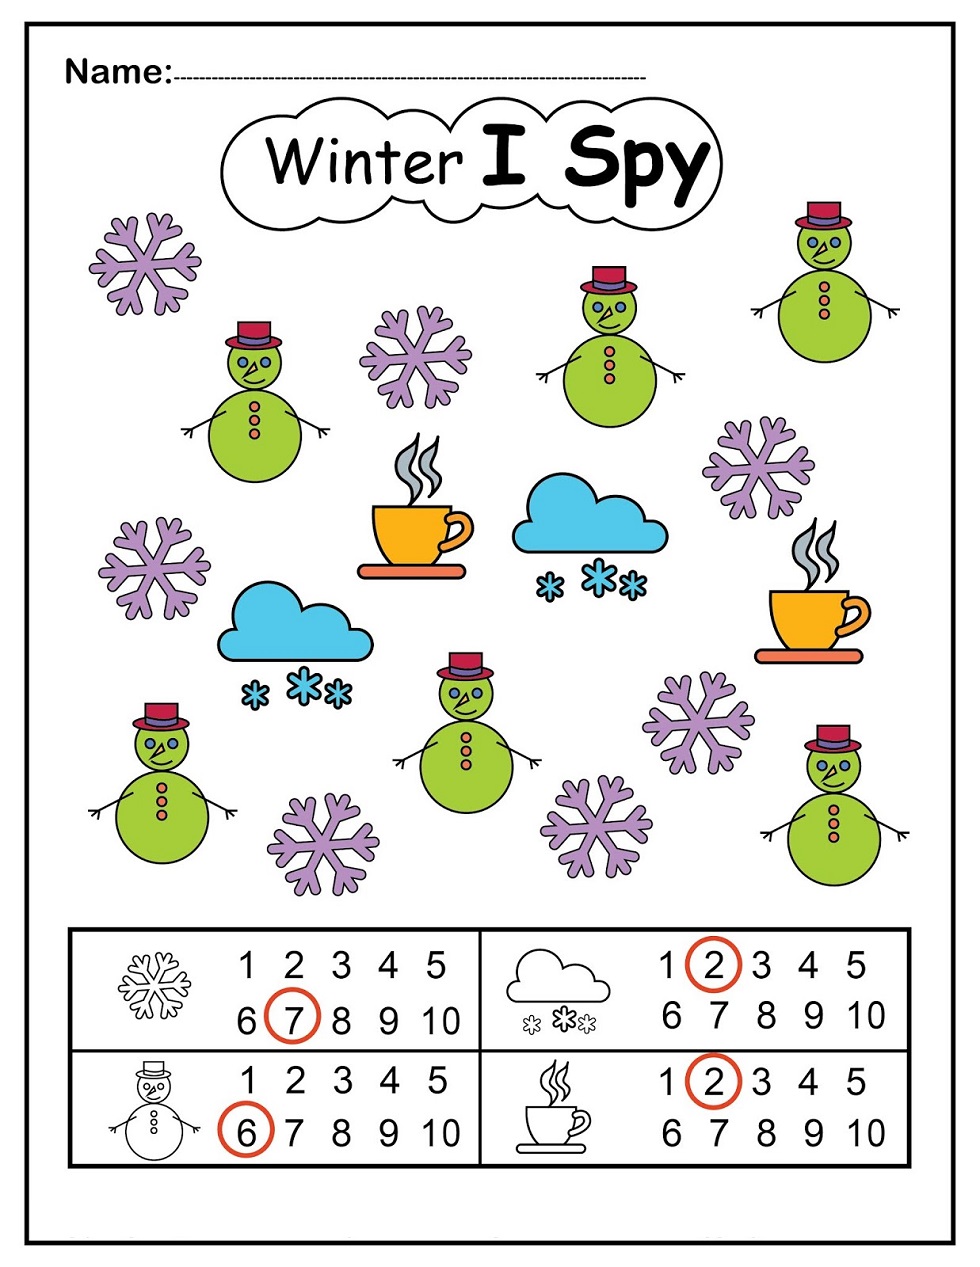 Winter I Spy